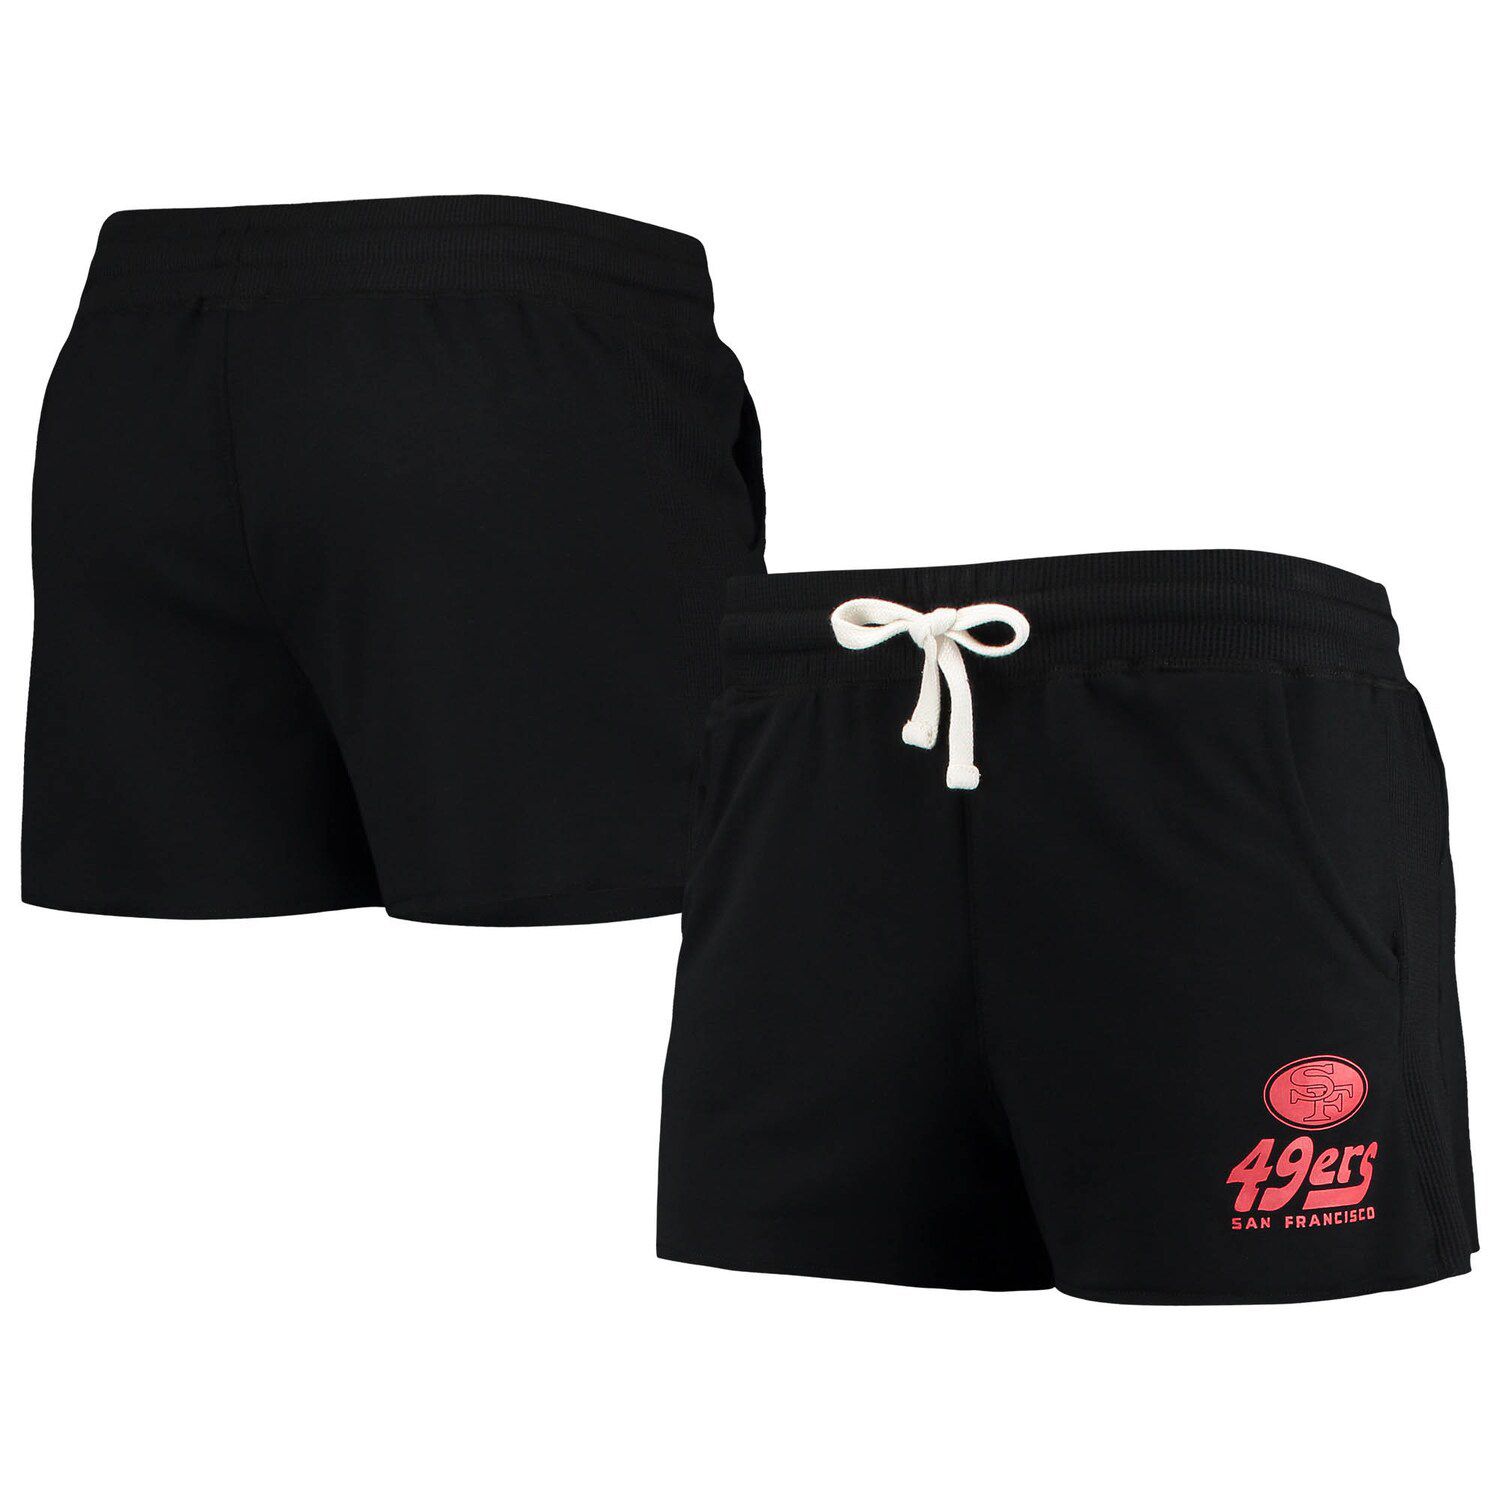 Image for Unbranded Women's Junk Food Black San Francisco 49ers Tri-Blend Shorts at Kohl's.